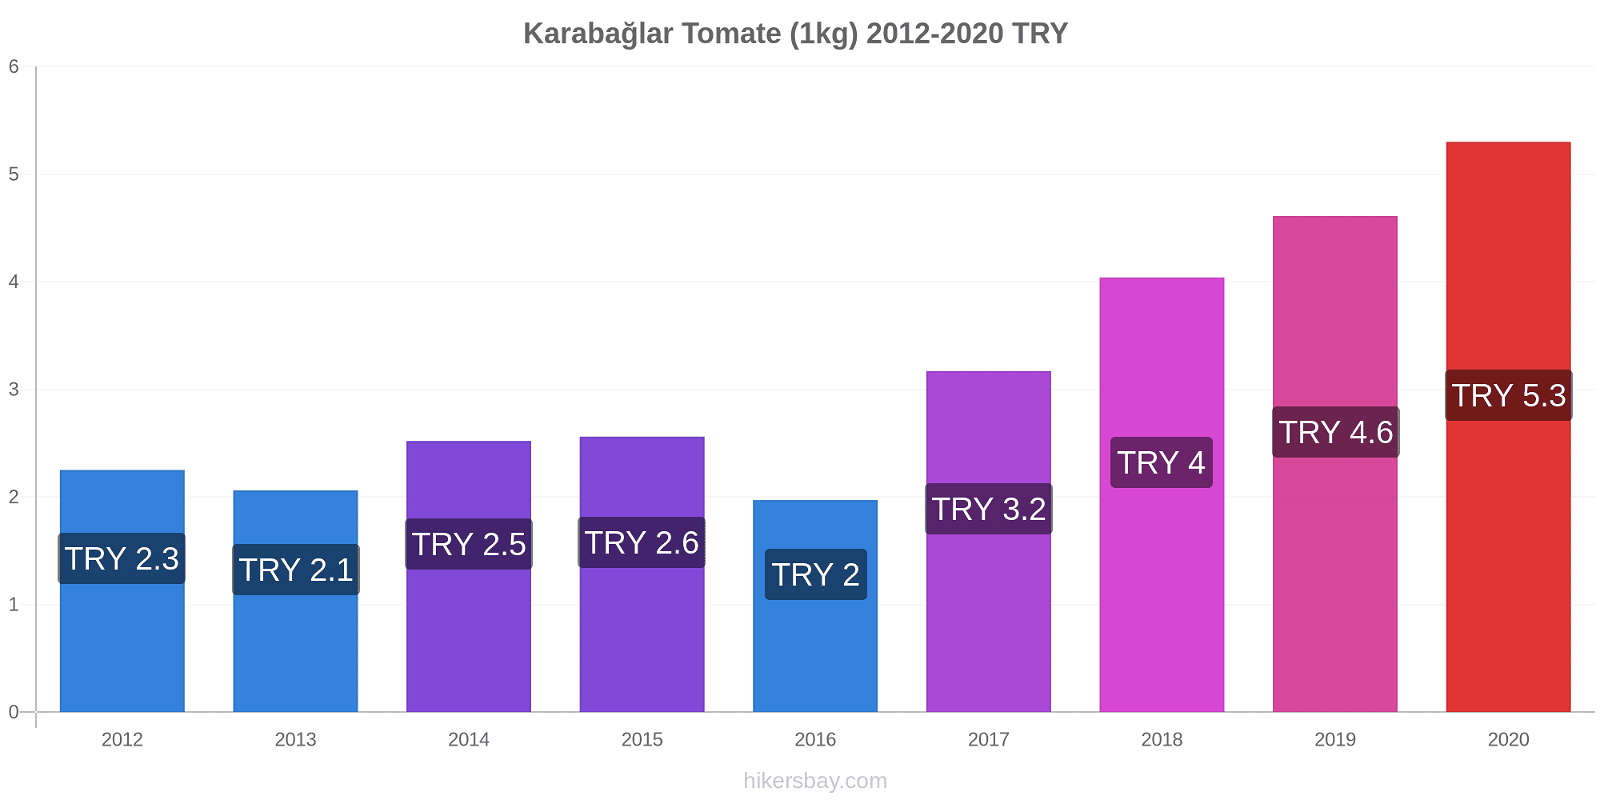 Karabağlar cambios de precios Tomate (1kg) hikersbay.com